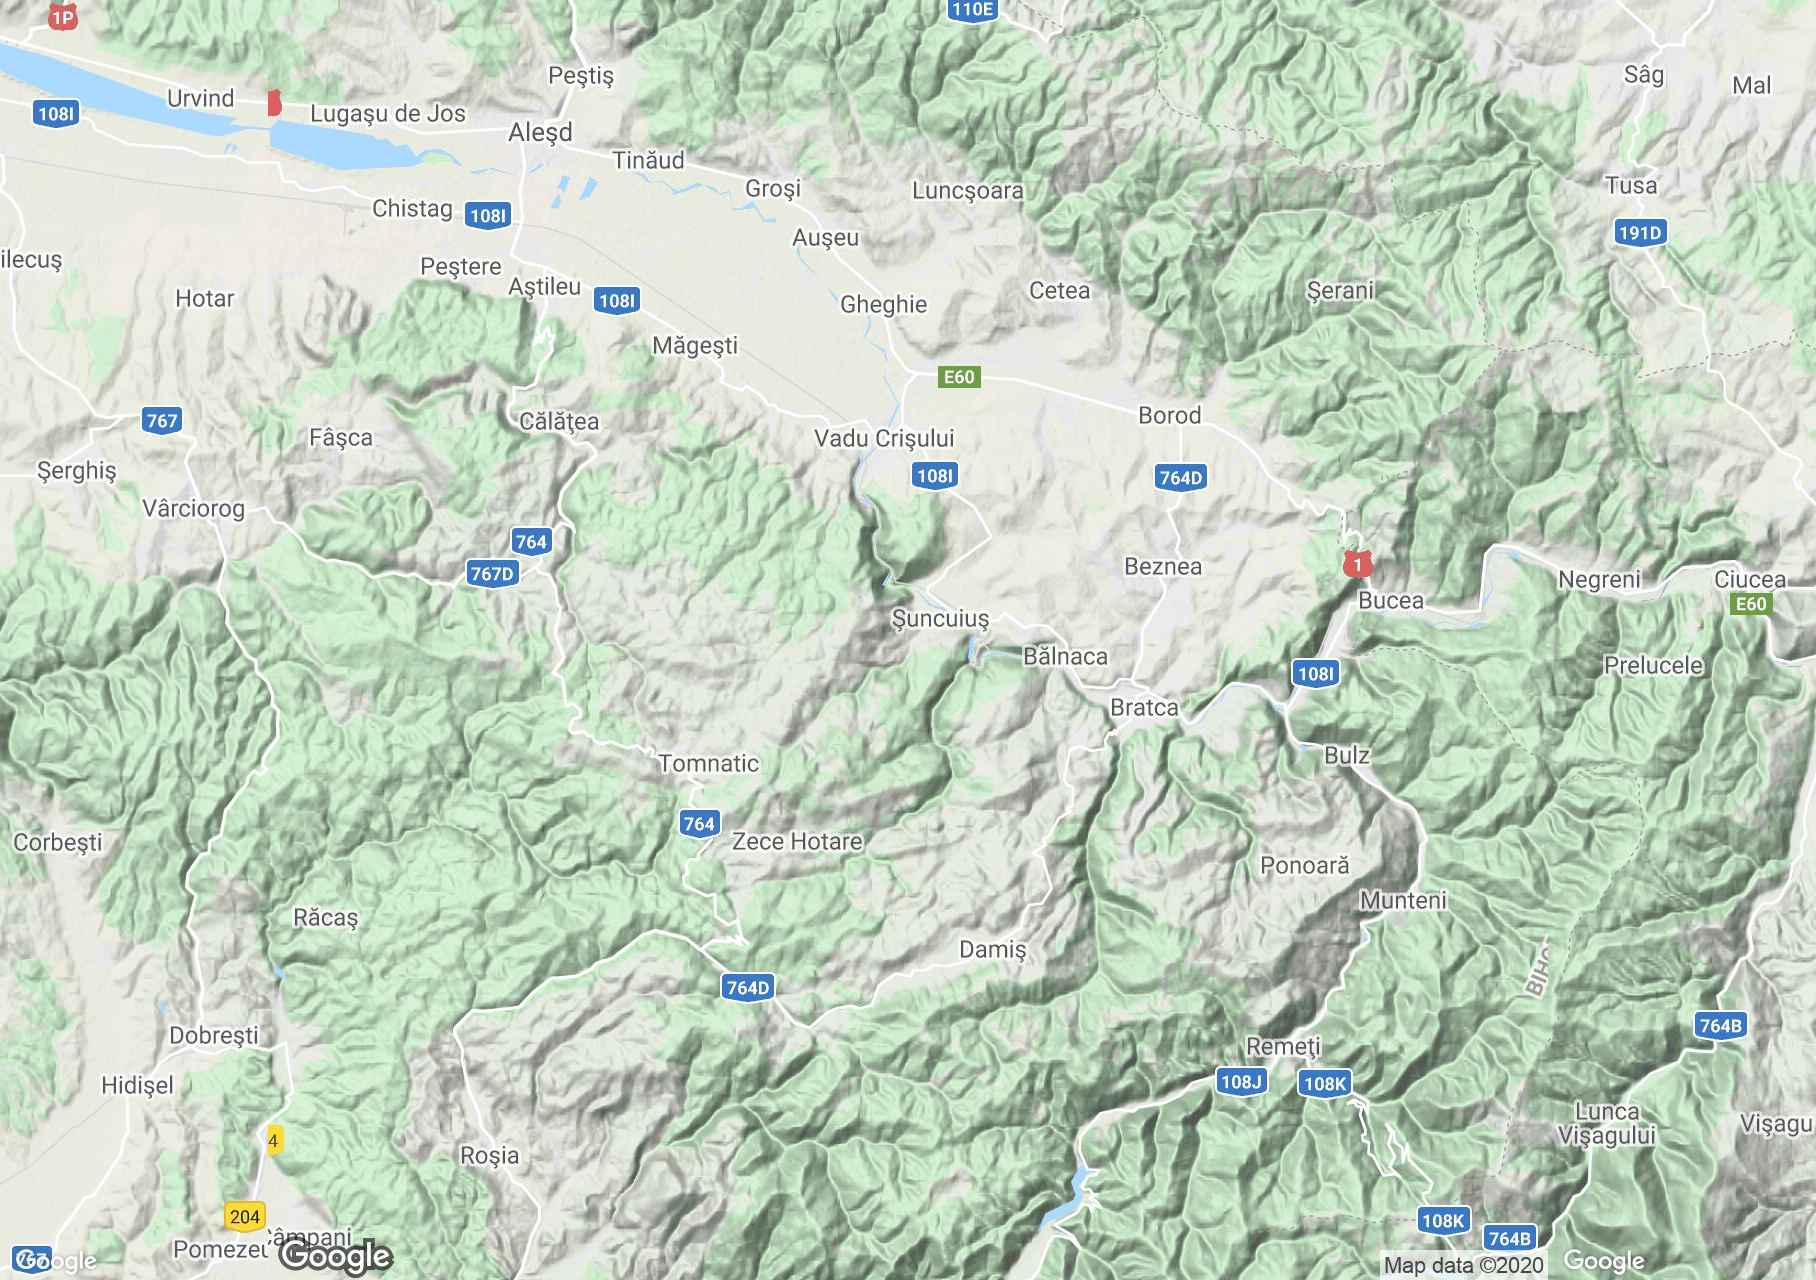 Pădurea Craiului Mountains: Crişul Repede defile, Interactive tourist map